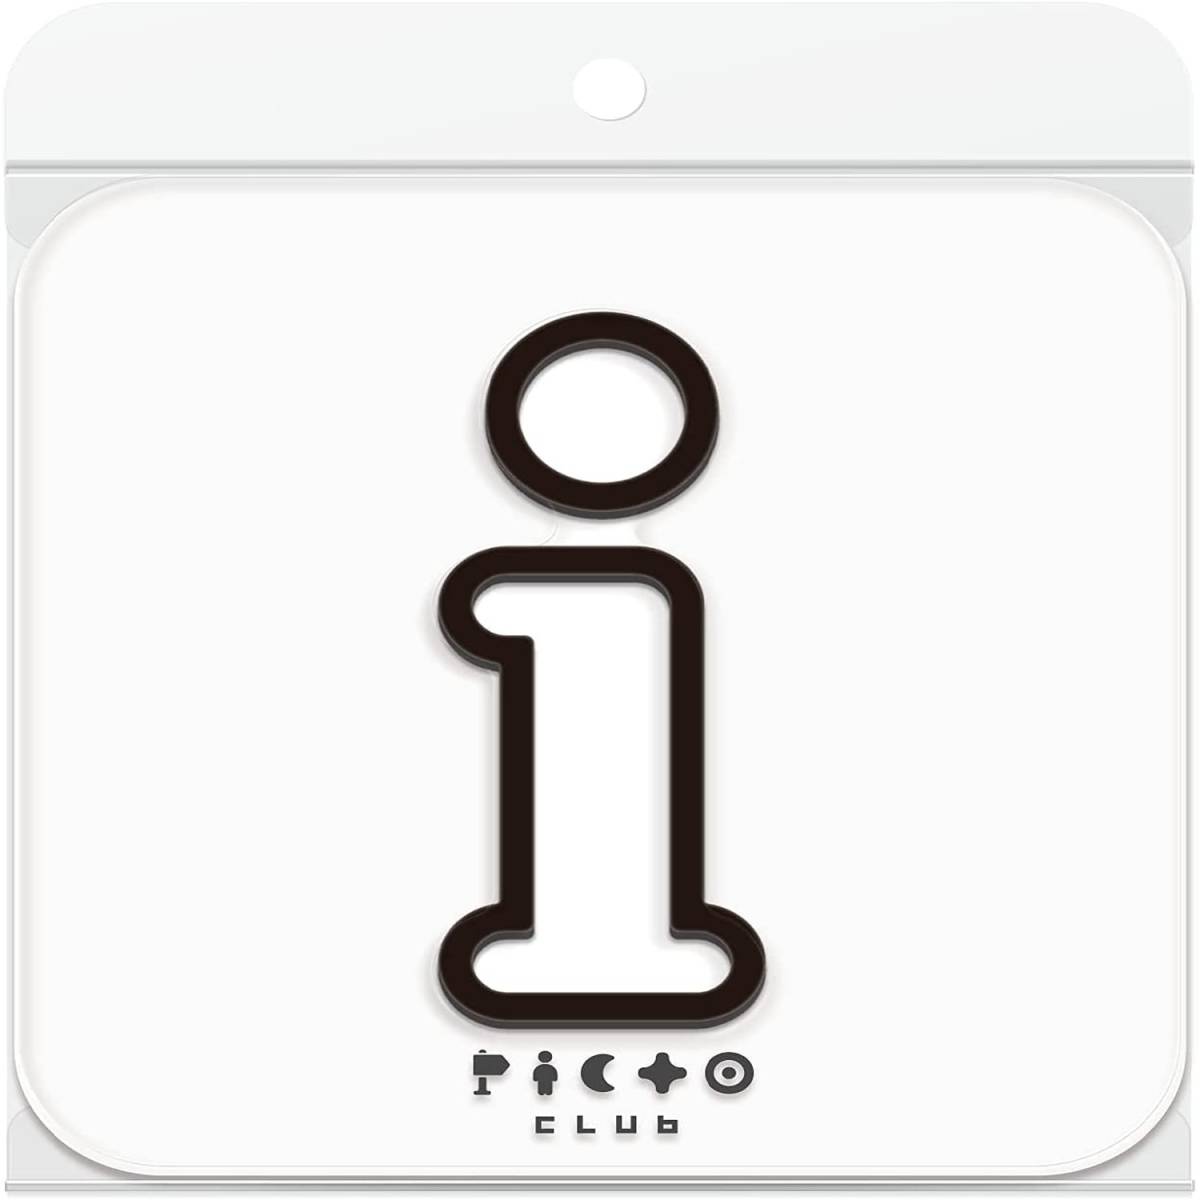 サインプレート インフォメーション案内表示看板 安心の日本製 シンプルデザイン 視認性抜群 取付簡単 貼り付けガイド付き 店舗 インテリア